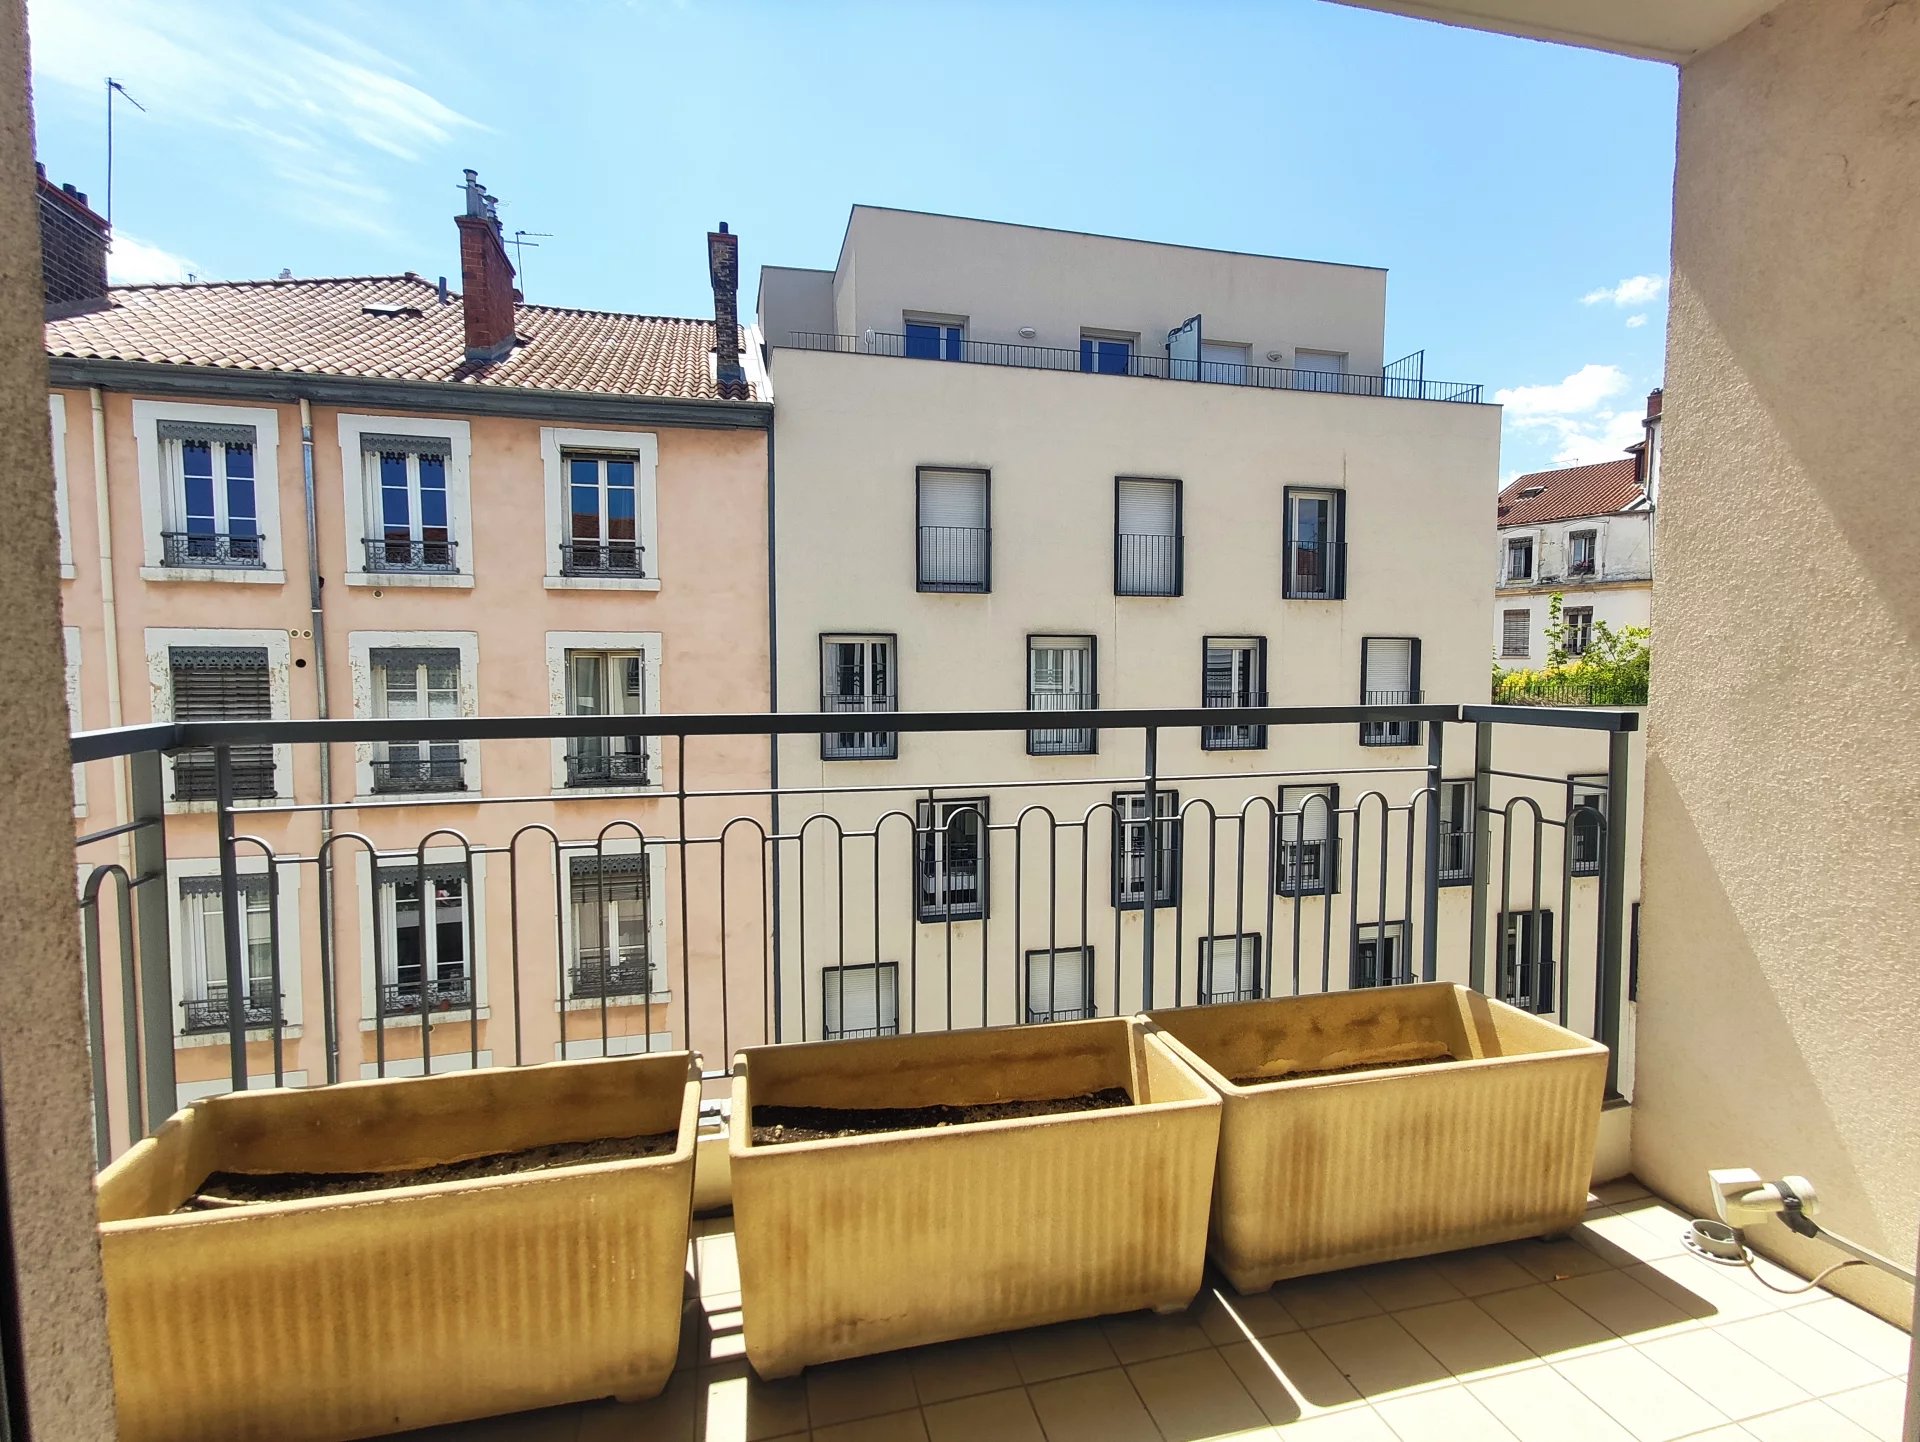 Sale Apartment - Lyon 7ème Jean Macé